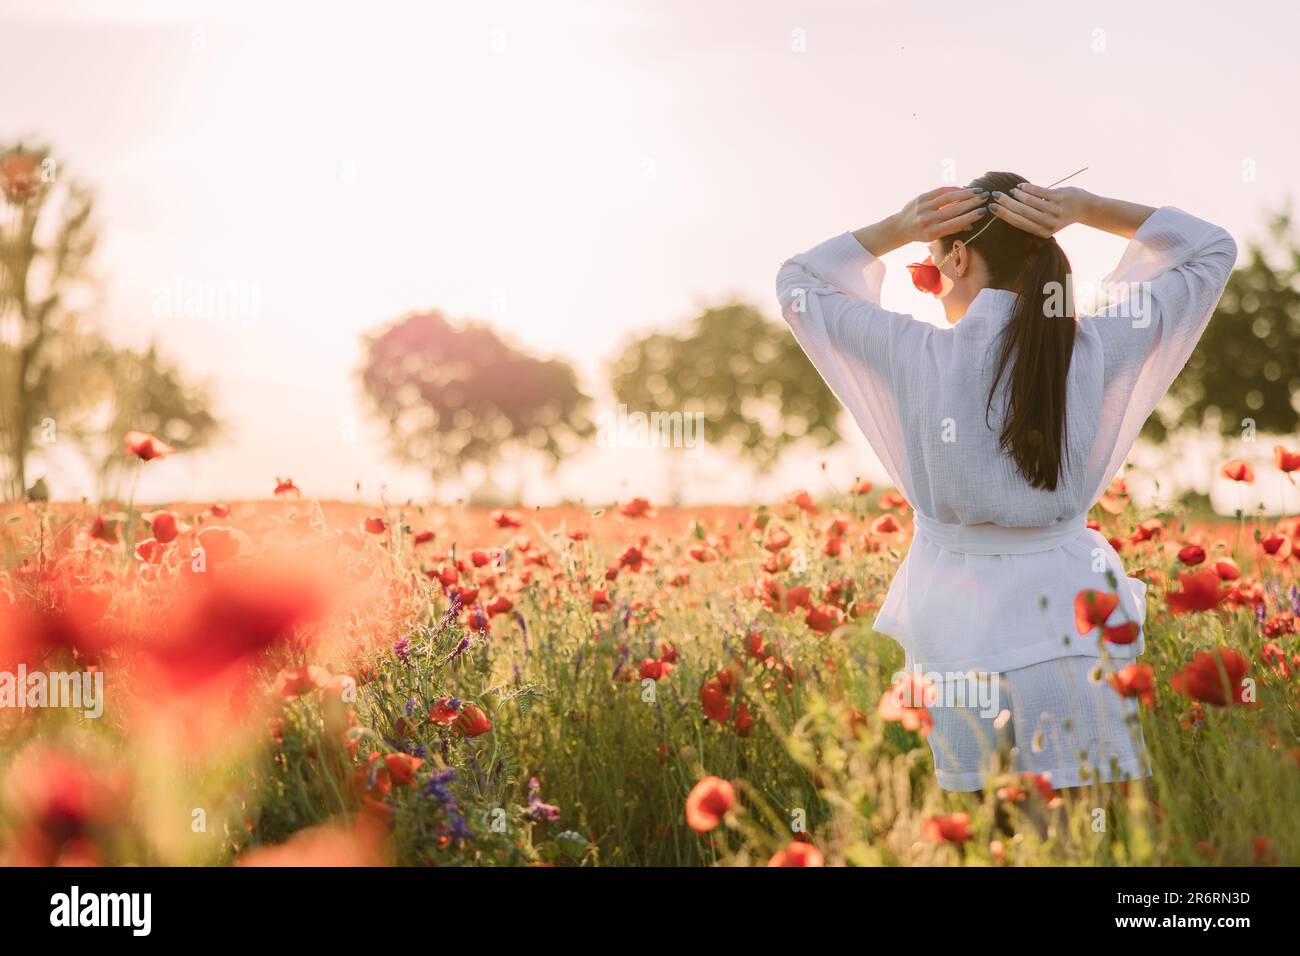 Giovane donna in abiti bianchi che cammina e si gode tra poppies fiorito prato al tramonto. Vista posteriore. Immagine con spazio di copia. Foto Stock